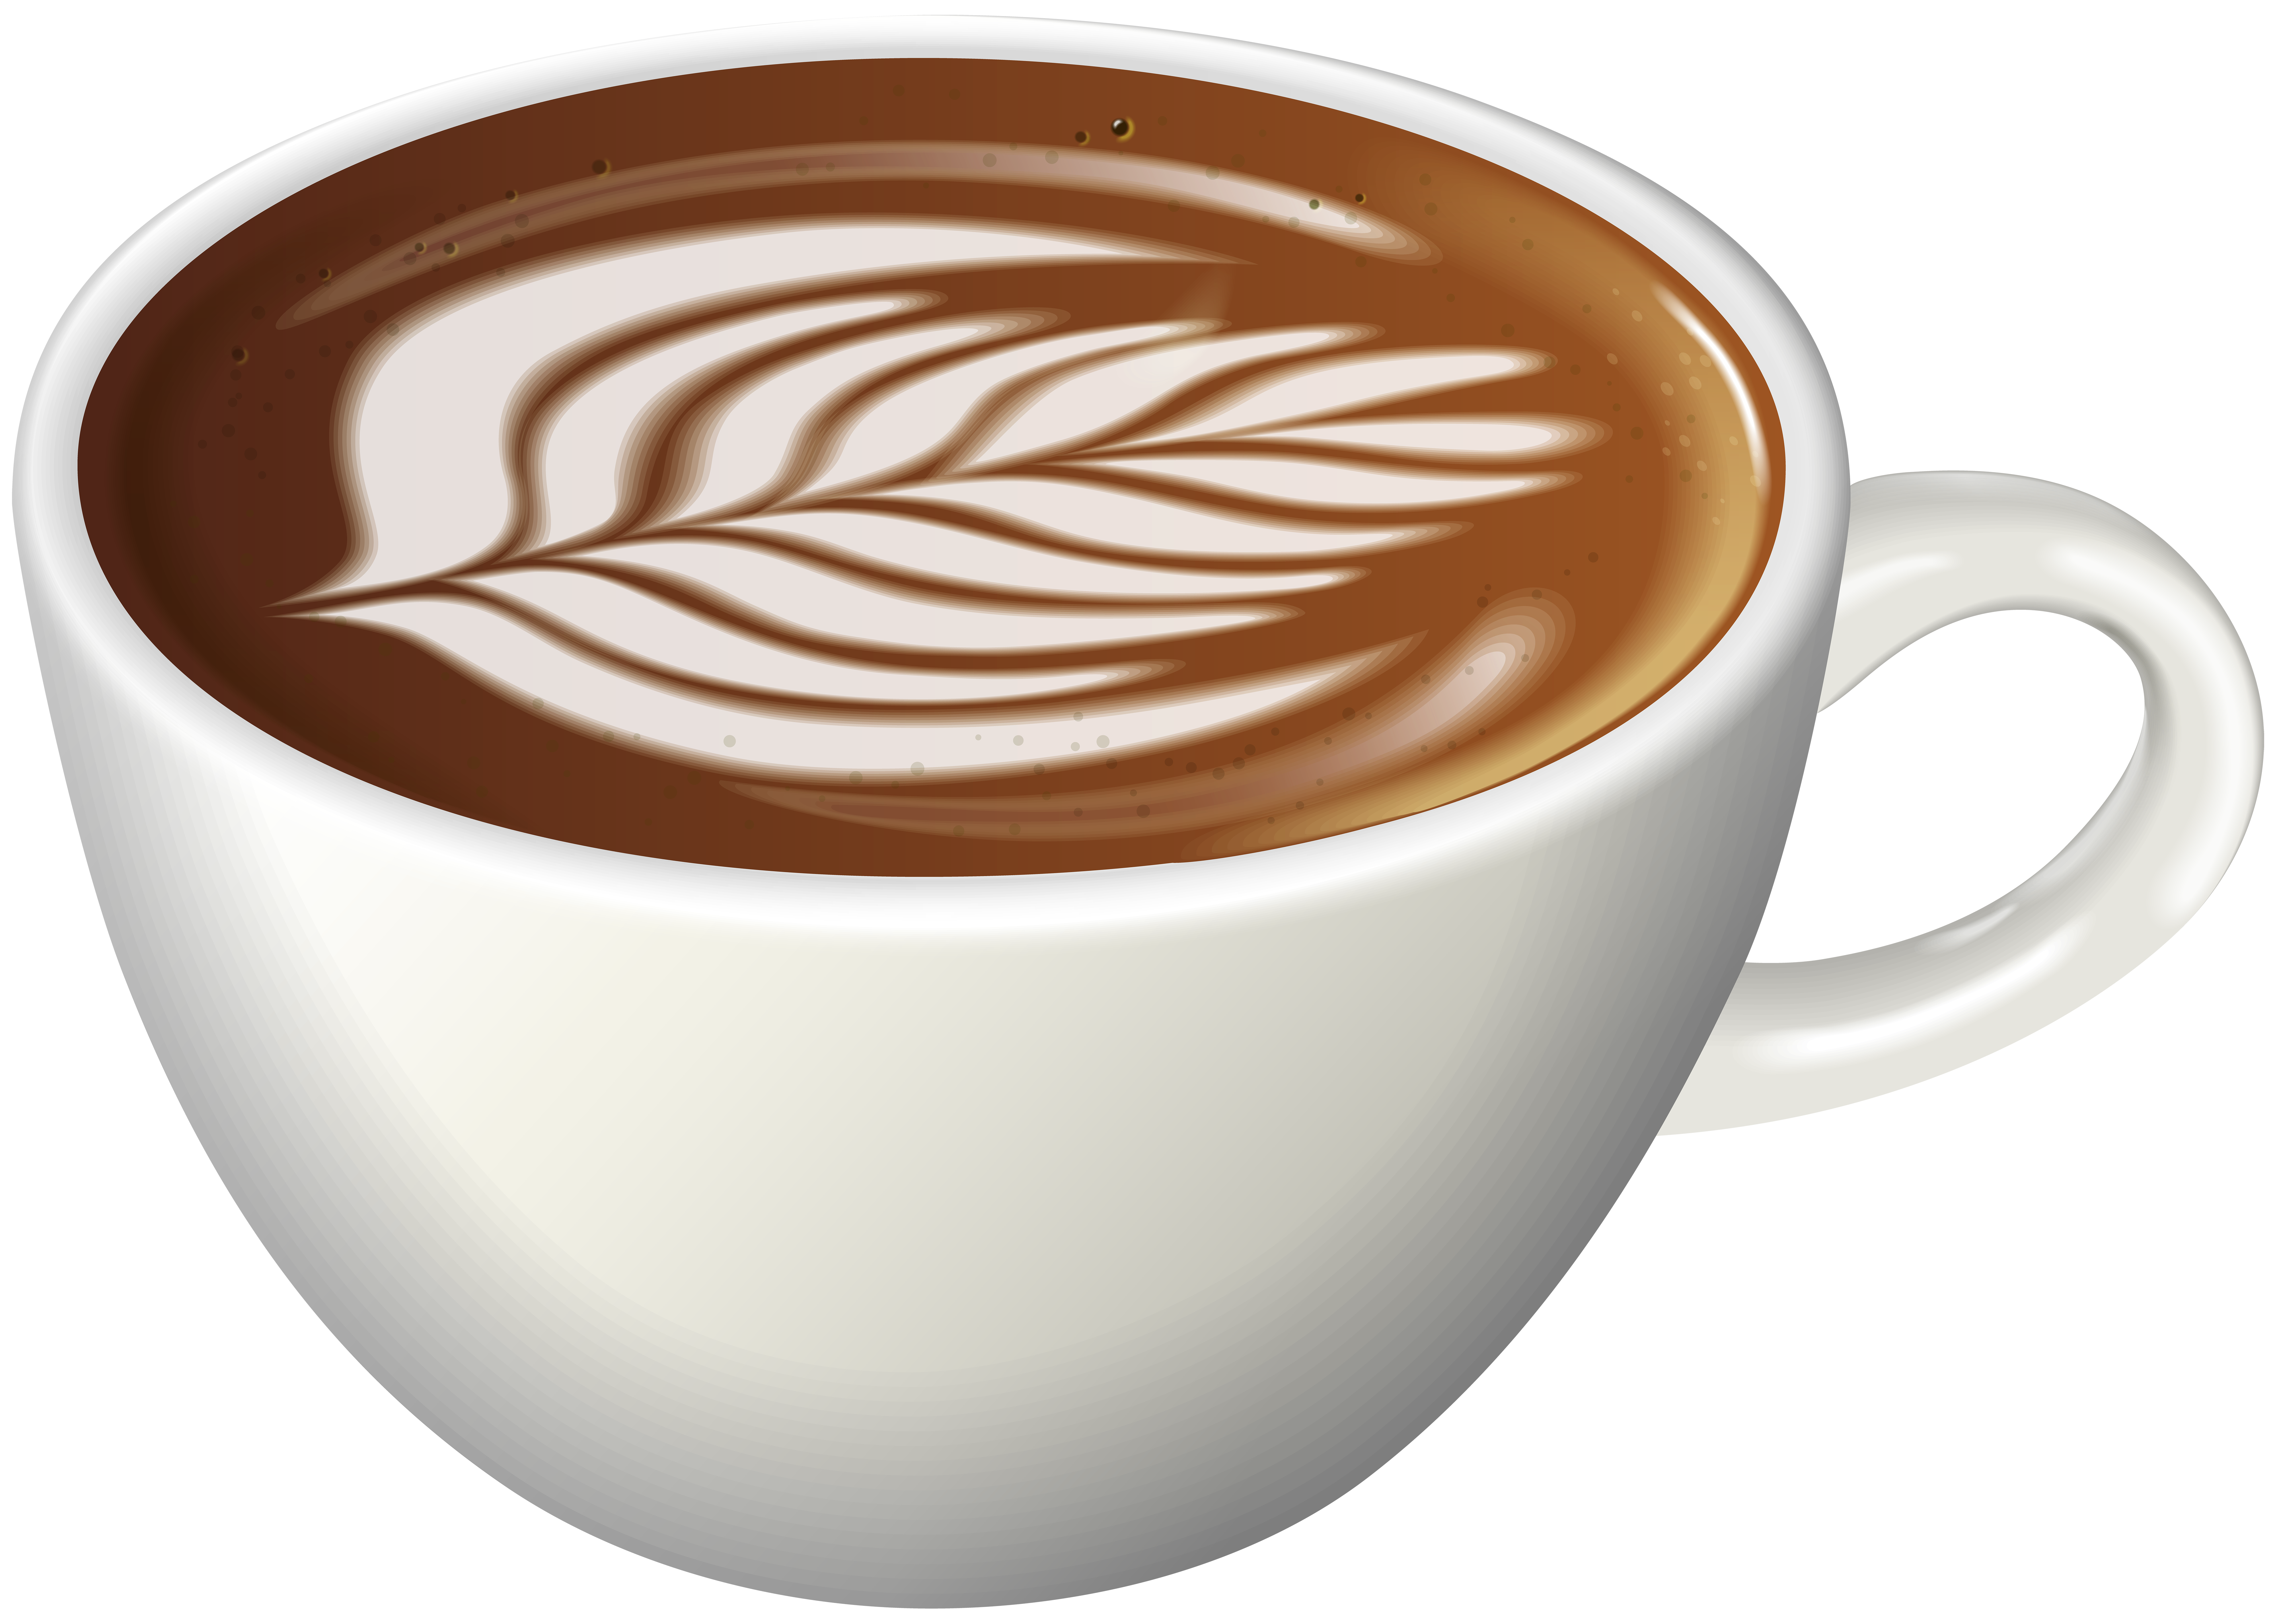 Coffee latte art.